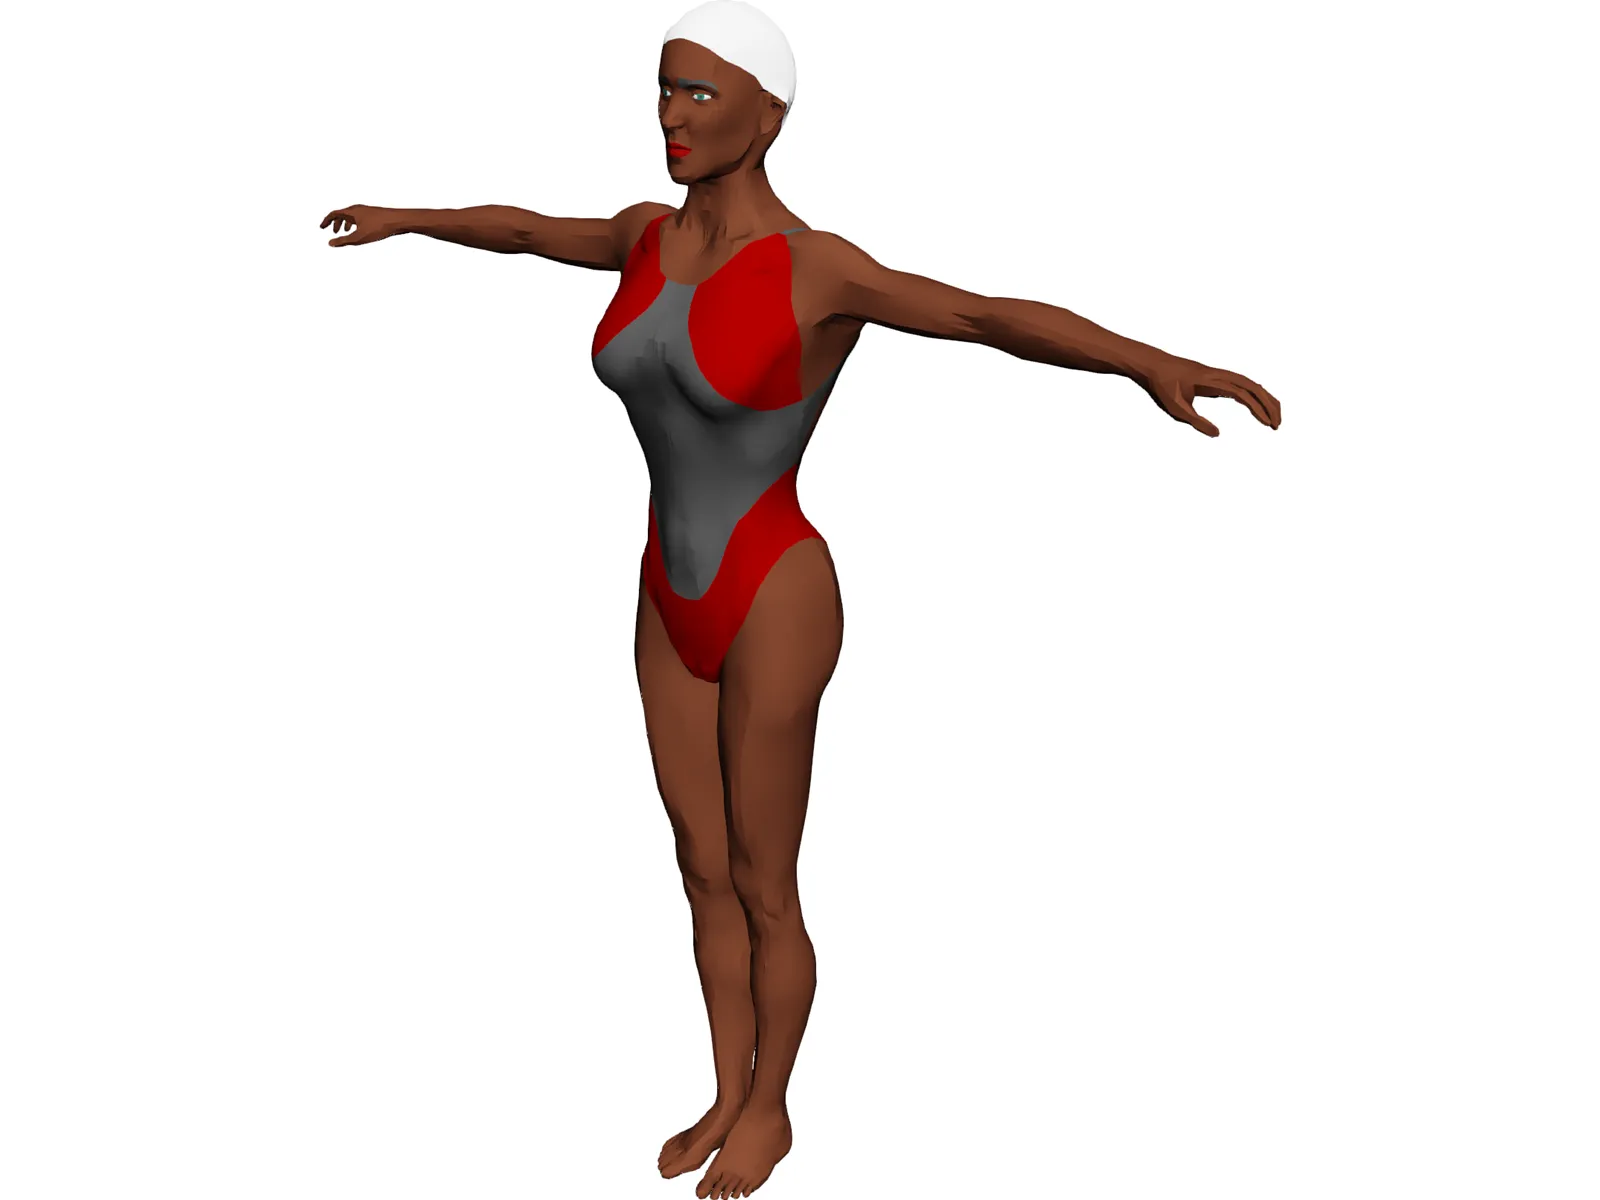 Swimmer Female 3D Model